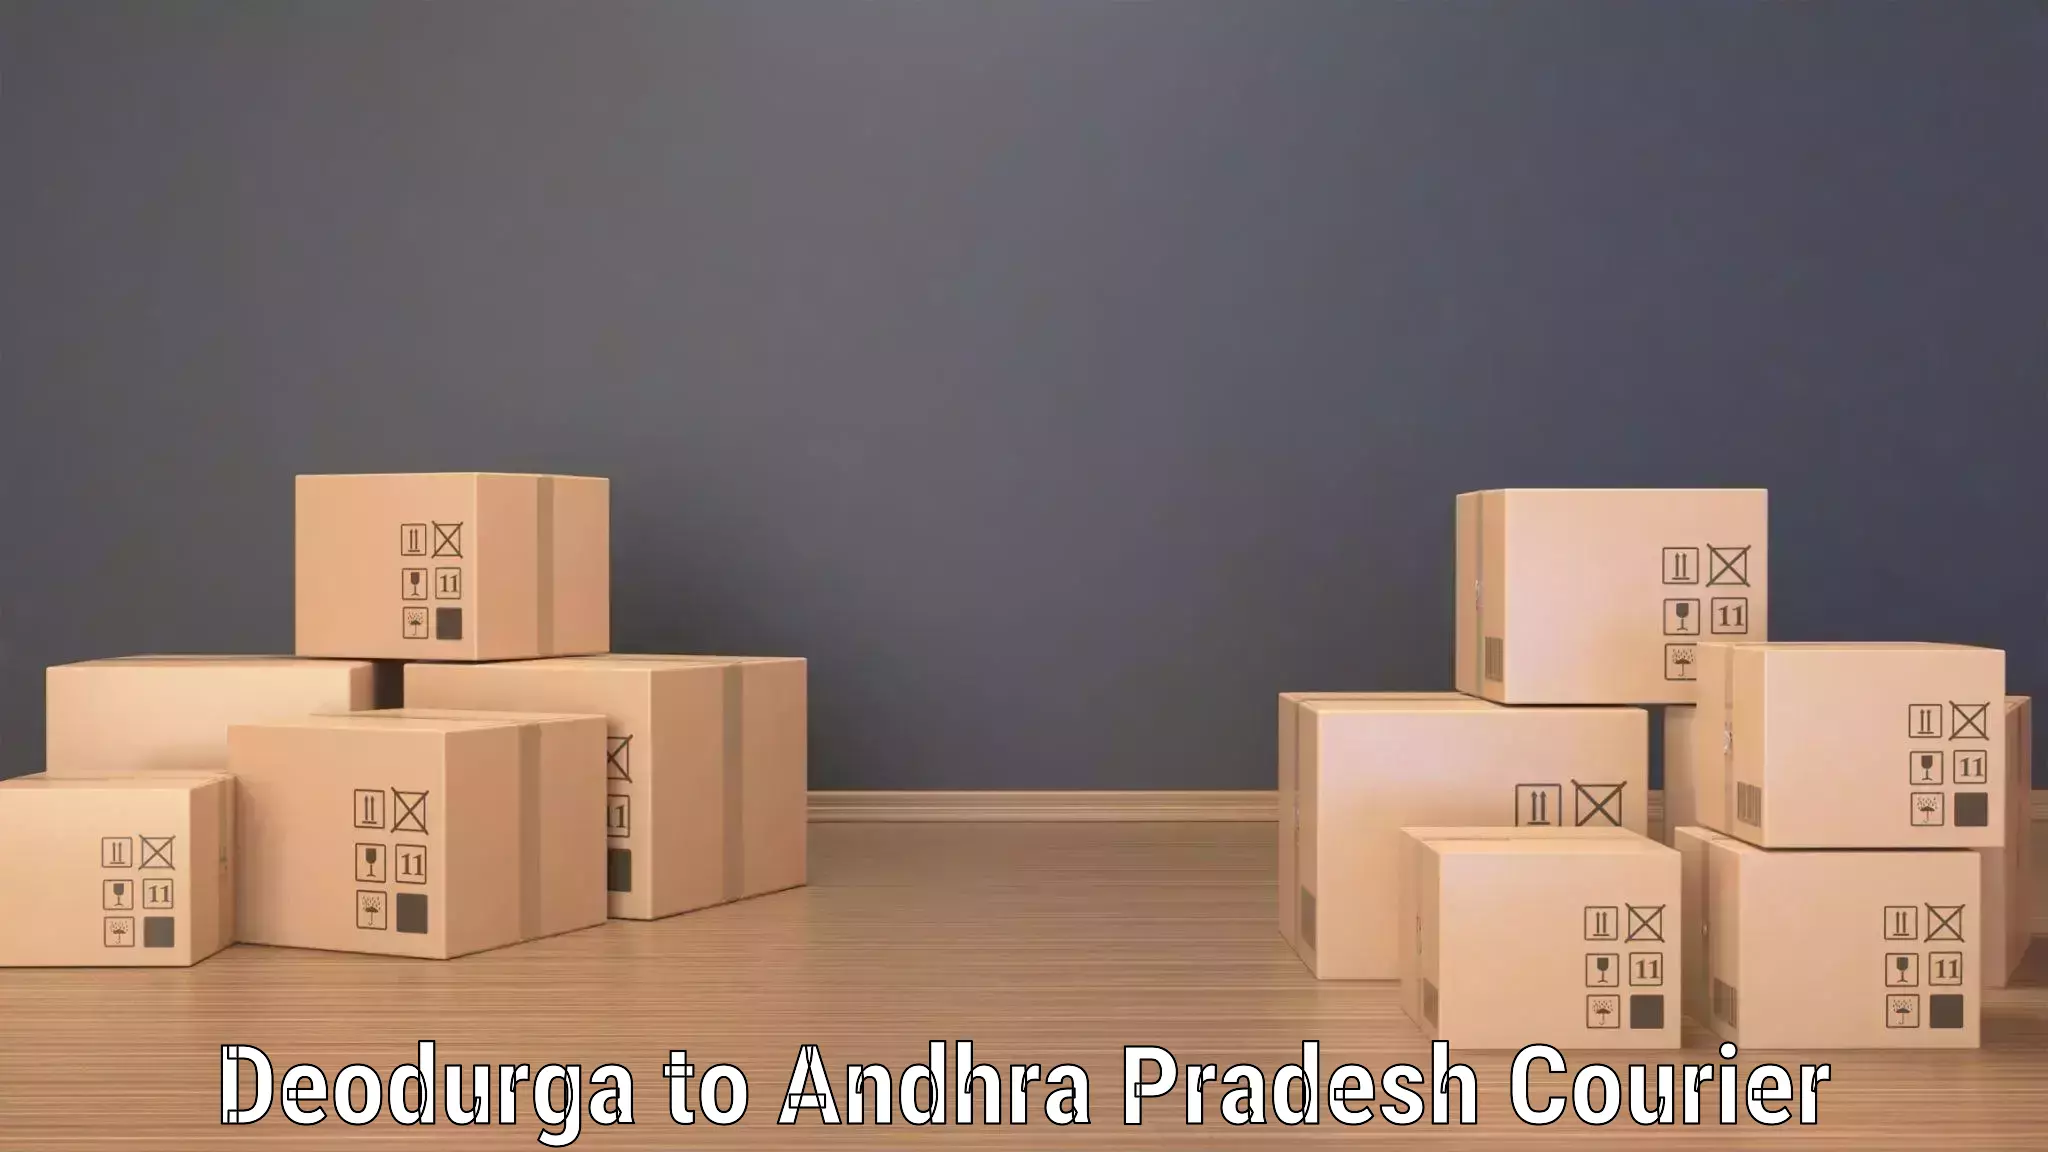 Ocean freight courier Deodurga to Krishna AP